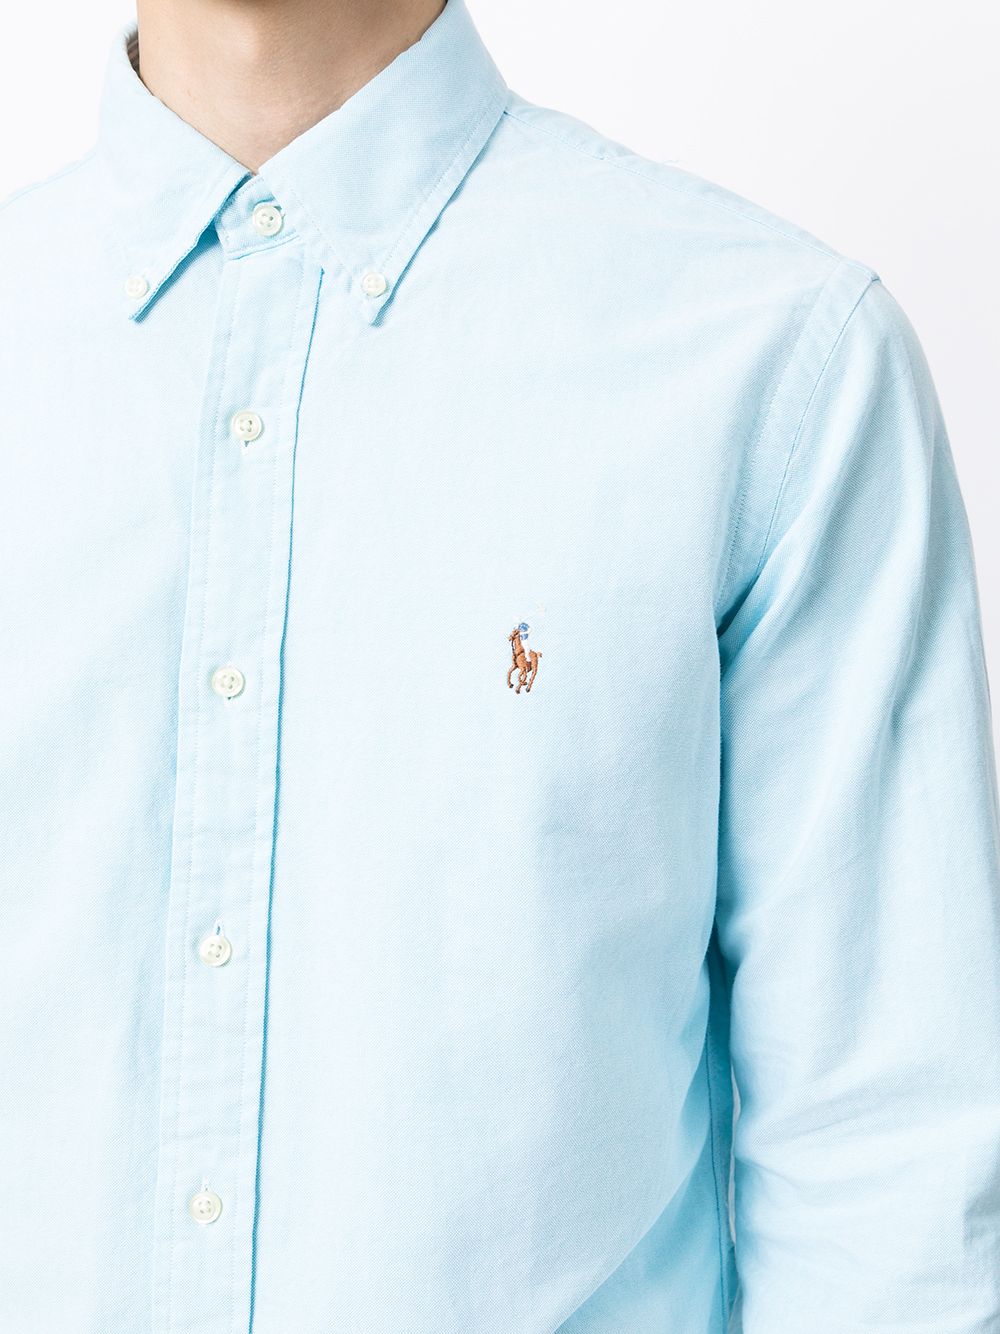 фото Polo ralph lauren рубашка с вышитым логотипом